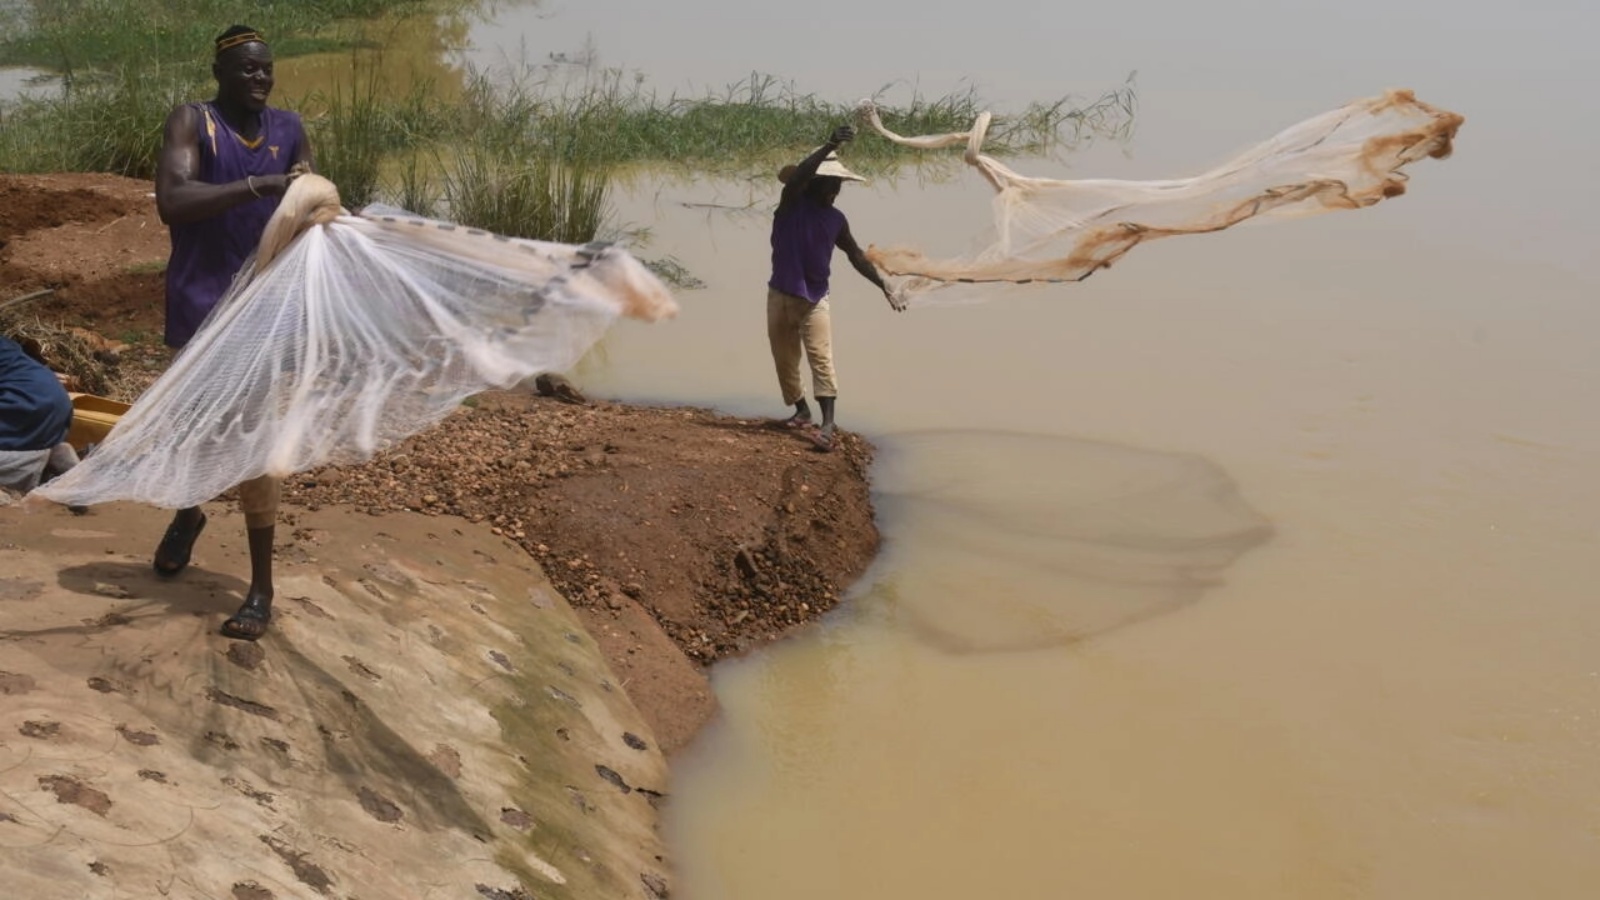 سكان قرية كواتشا يلقون شباك الصيد في نهر النيجر بالقرب من غايا على الحدود بين النيجر وبنين في 9 أكتوبر 2022